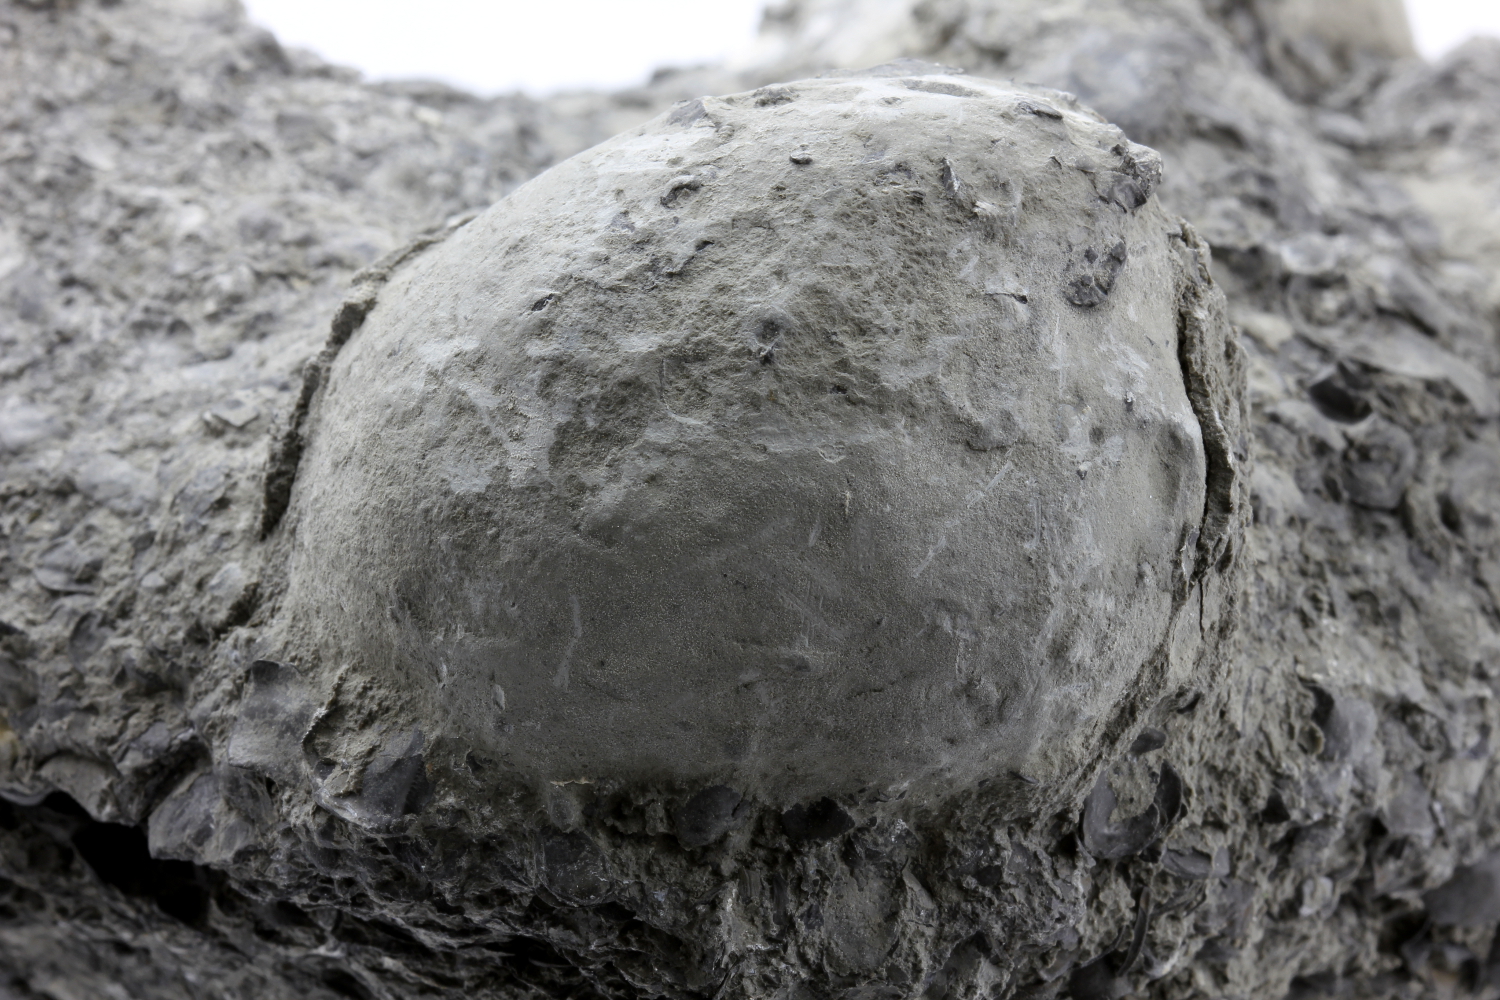 Lumachelle pyritisée Lumachelle épigénisée en pyrite dans une argile Bassin parisien Boutonnière du Boulonnais  